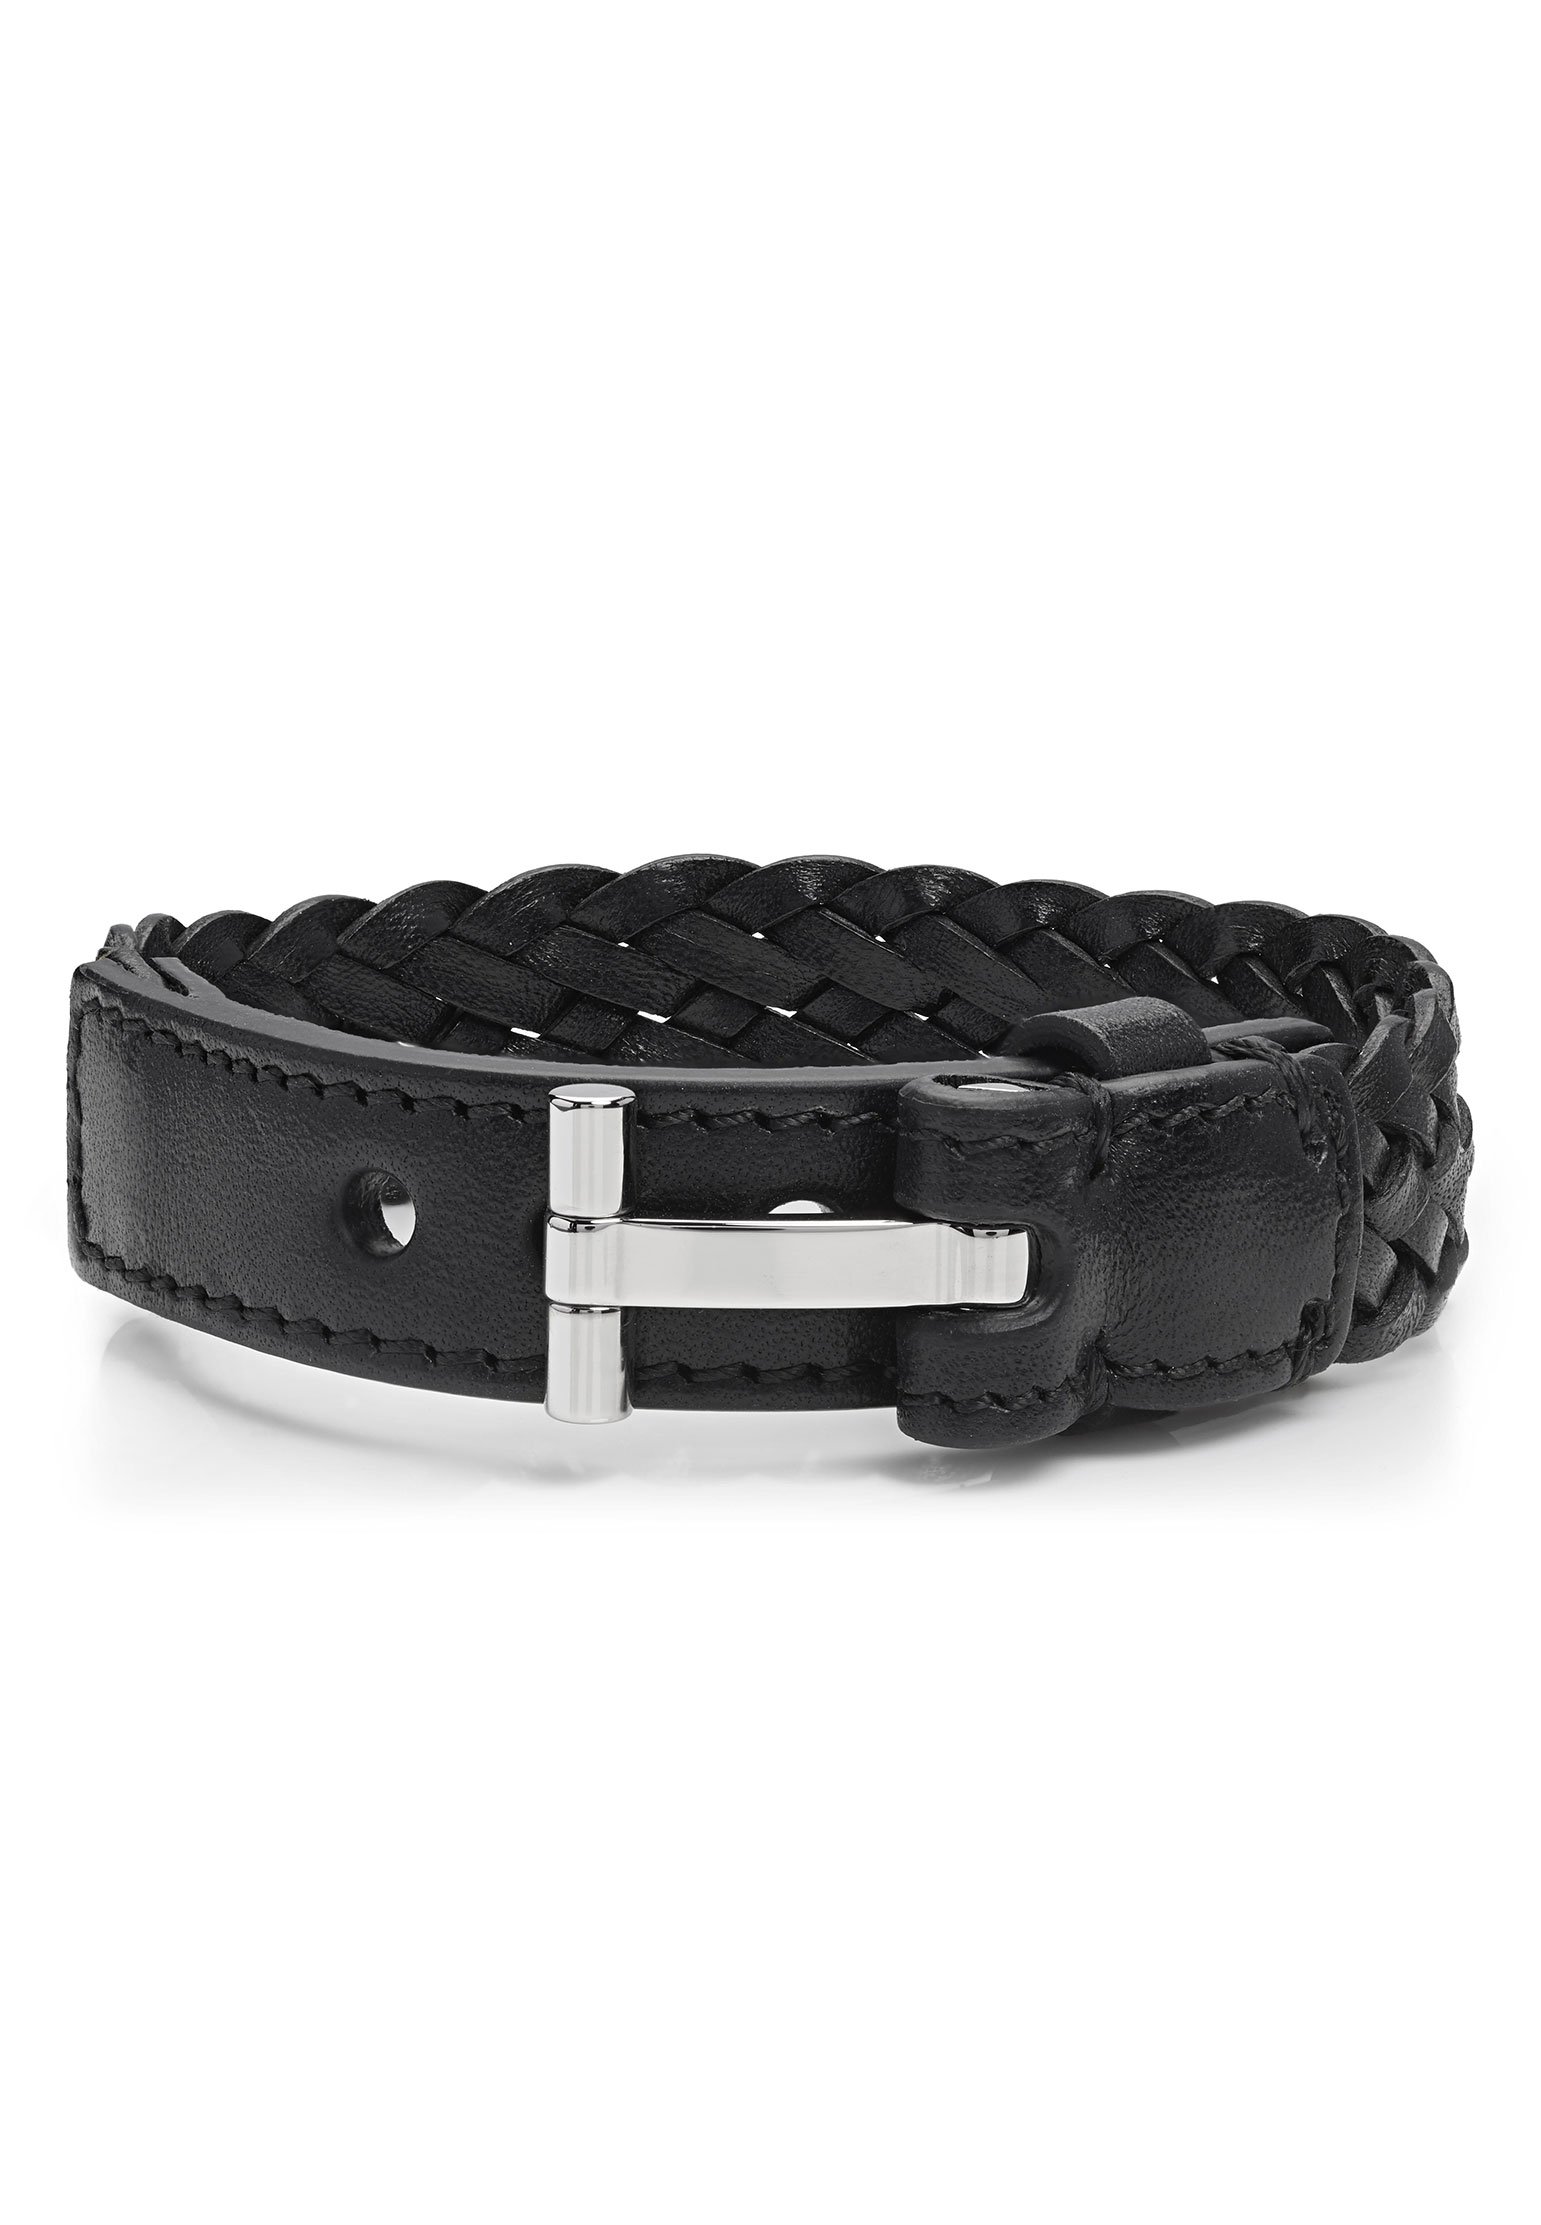 Bracelet TOM FORD Color: black (Code: 1058) in online store Allure